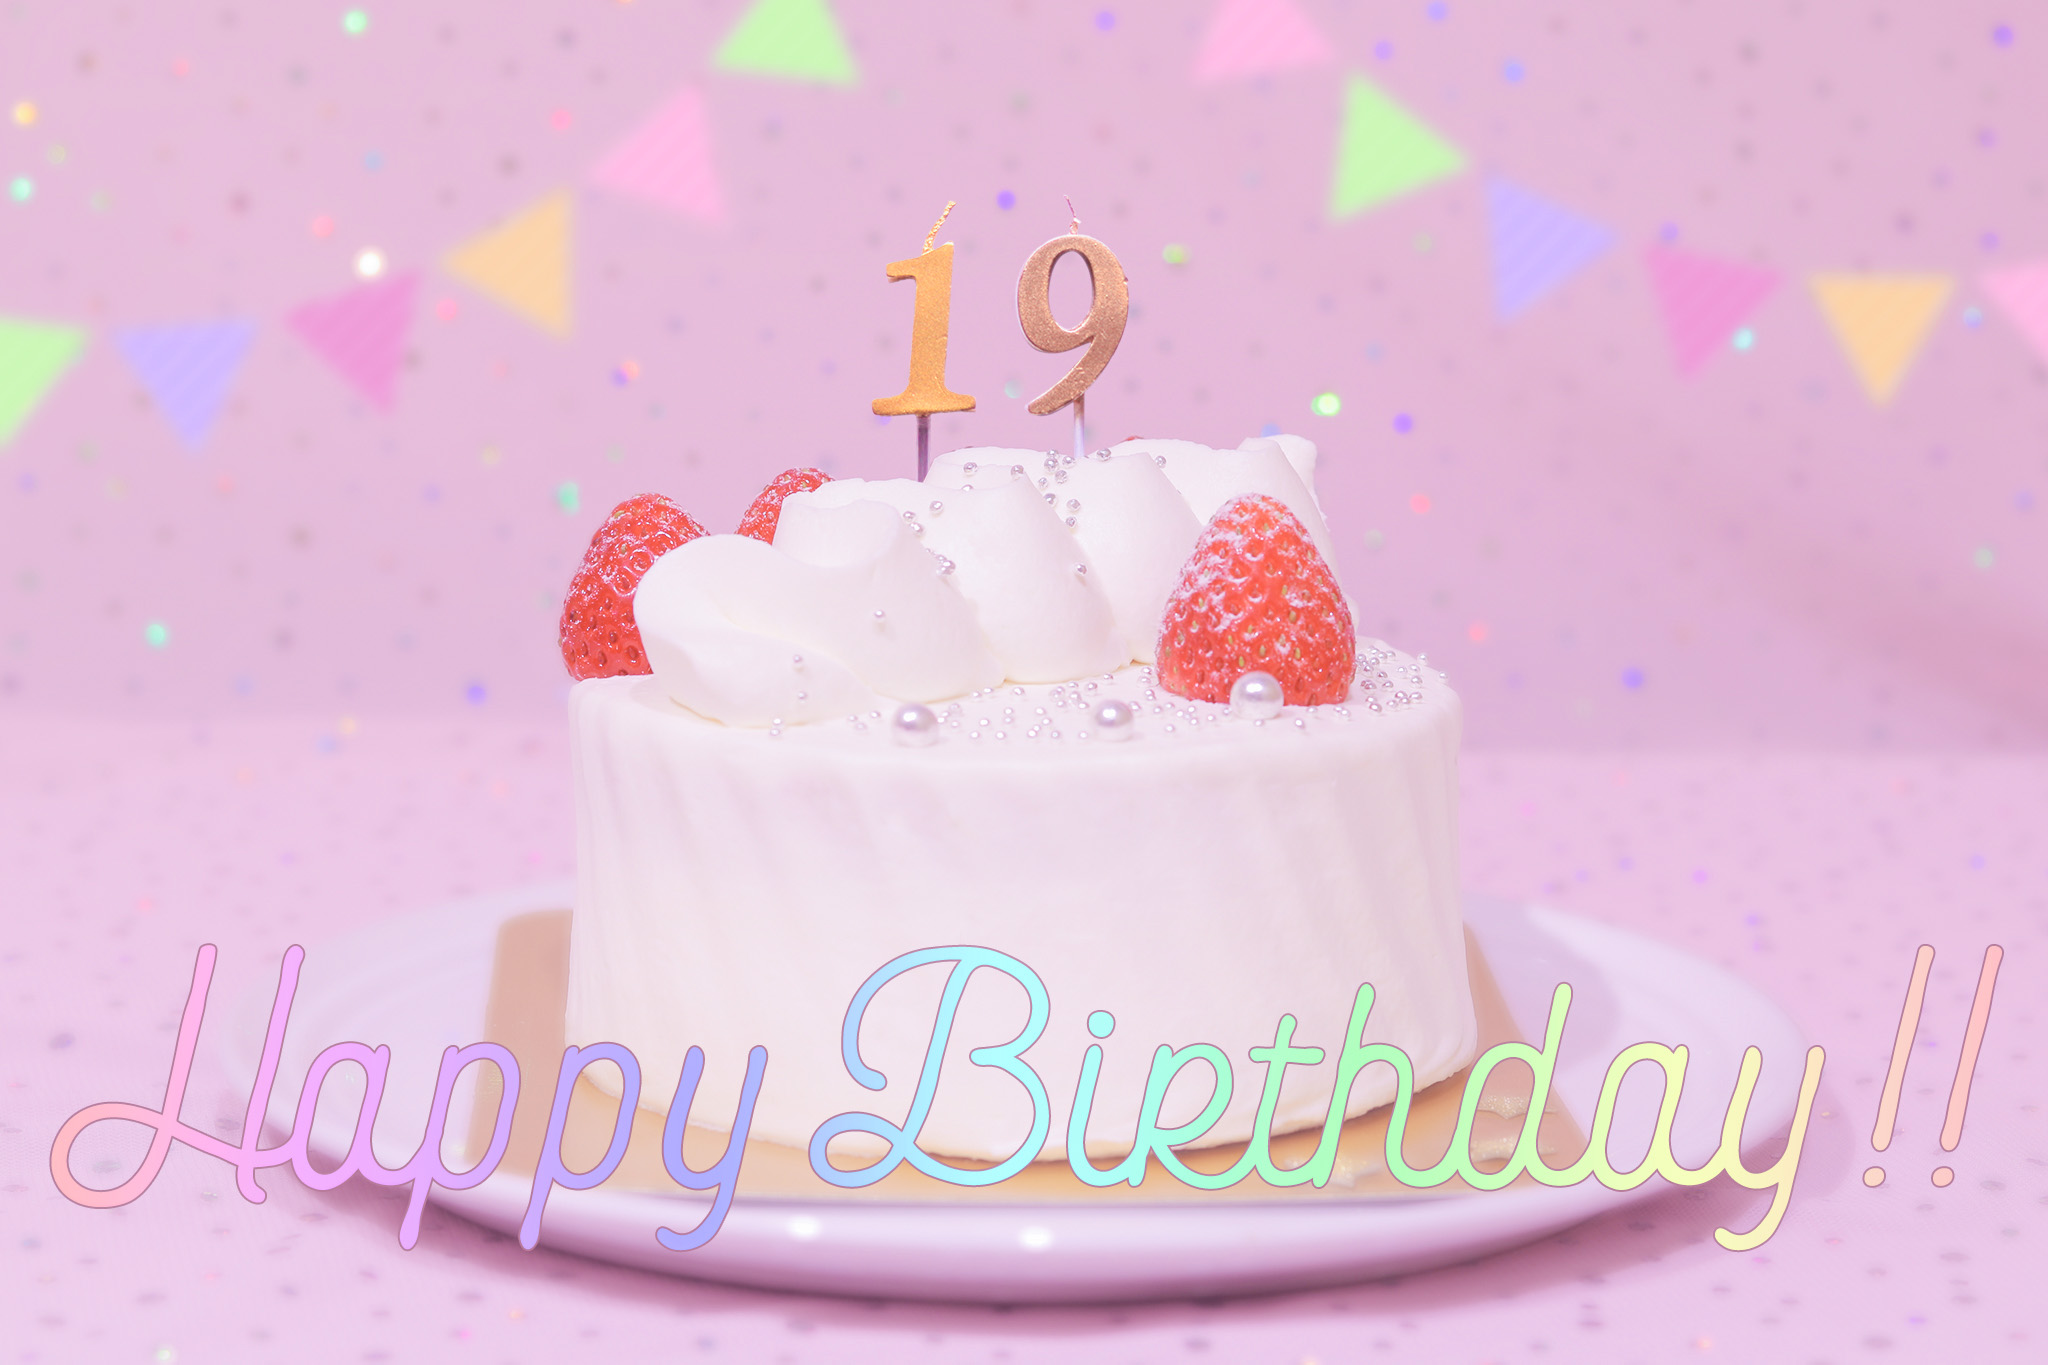 かわいい誕生日画像 ケーキとパステルカラーで可愛くお祝い 19歳編 のフリー画像 おしゃれなフリー写真素材 Girly Drop